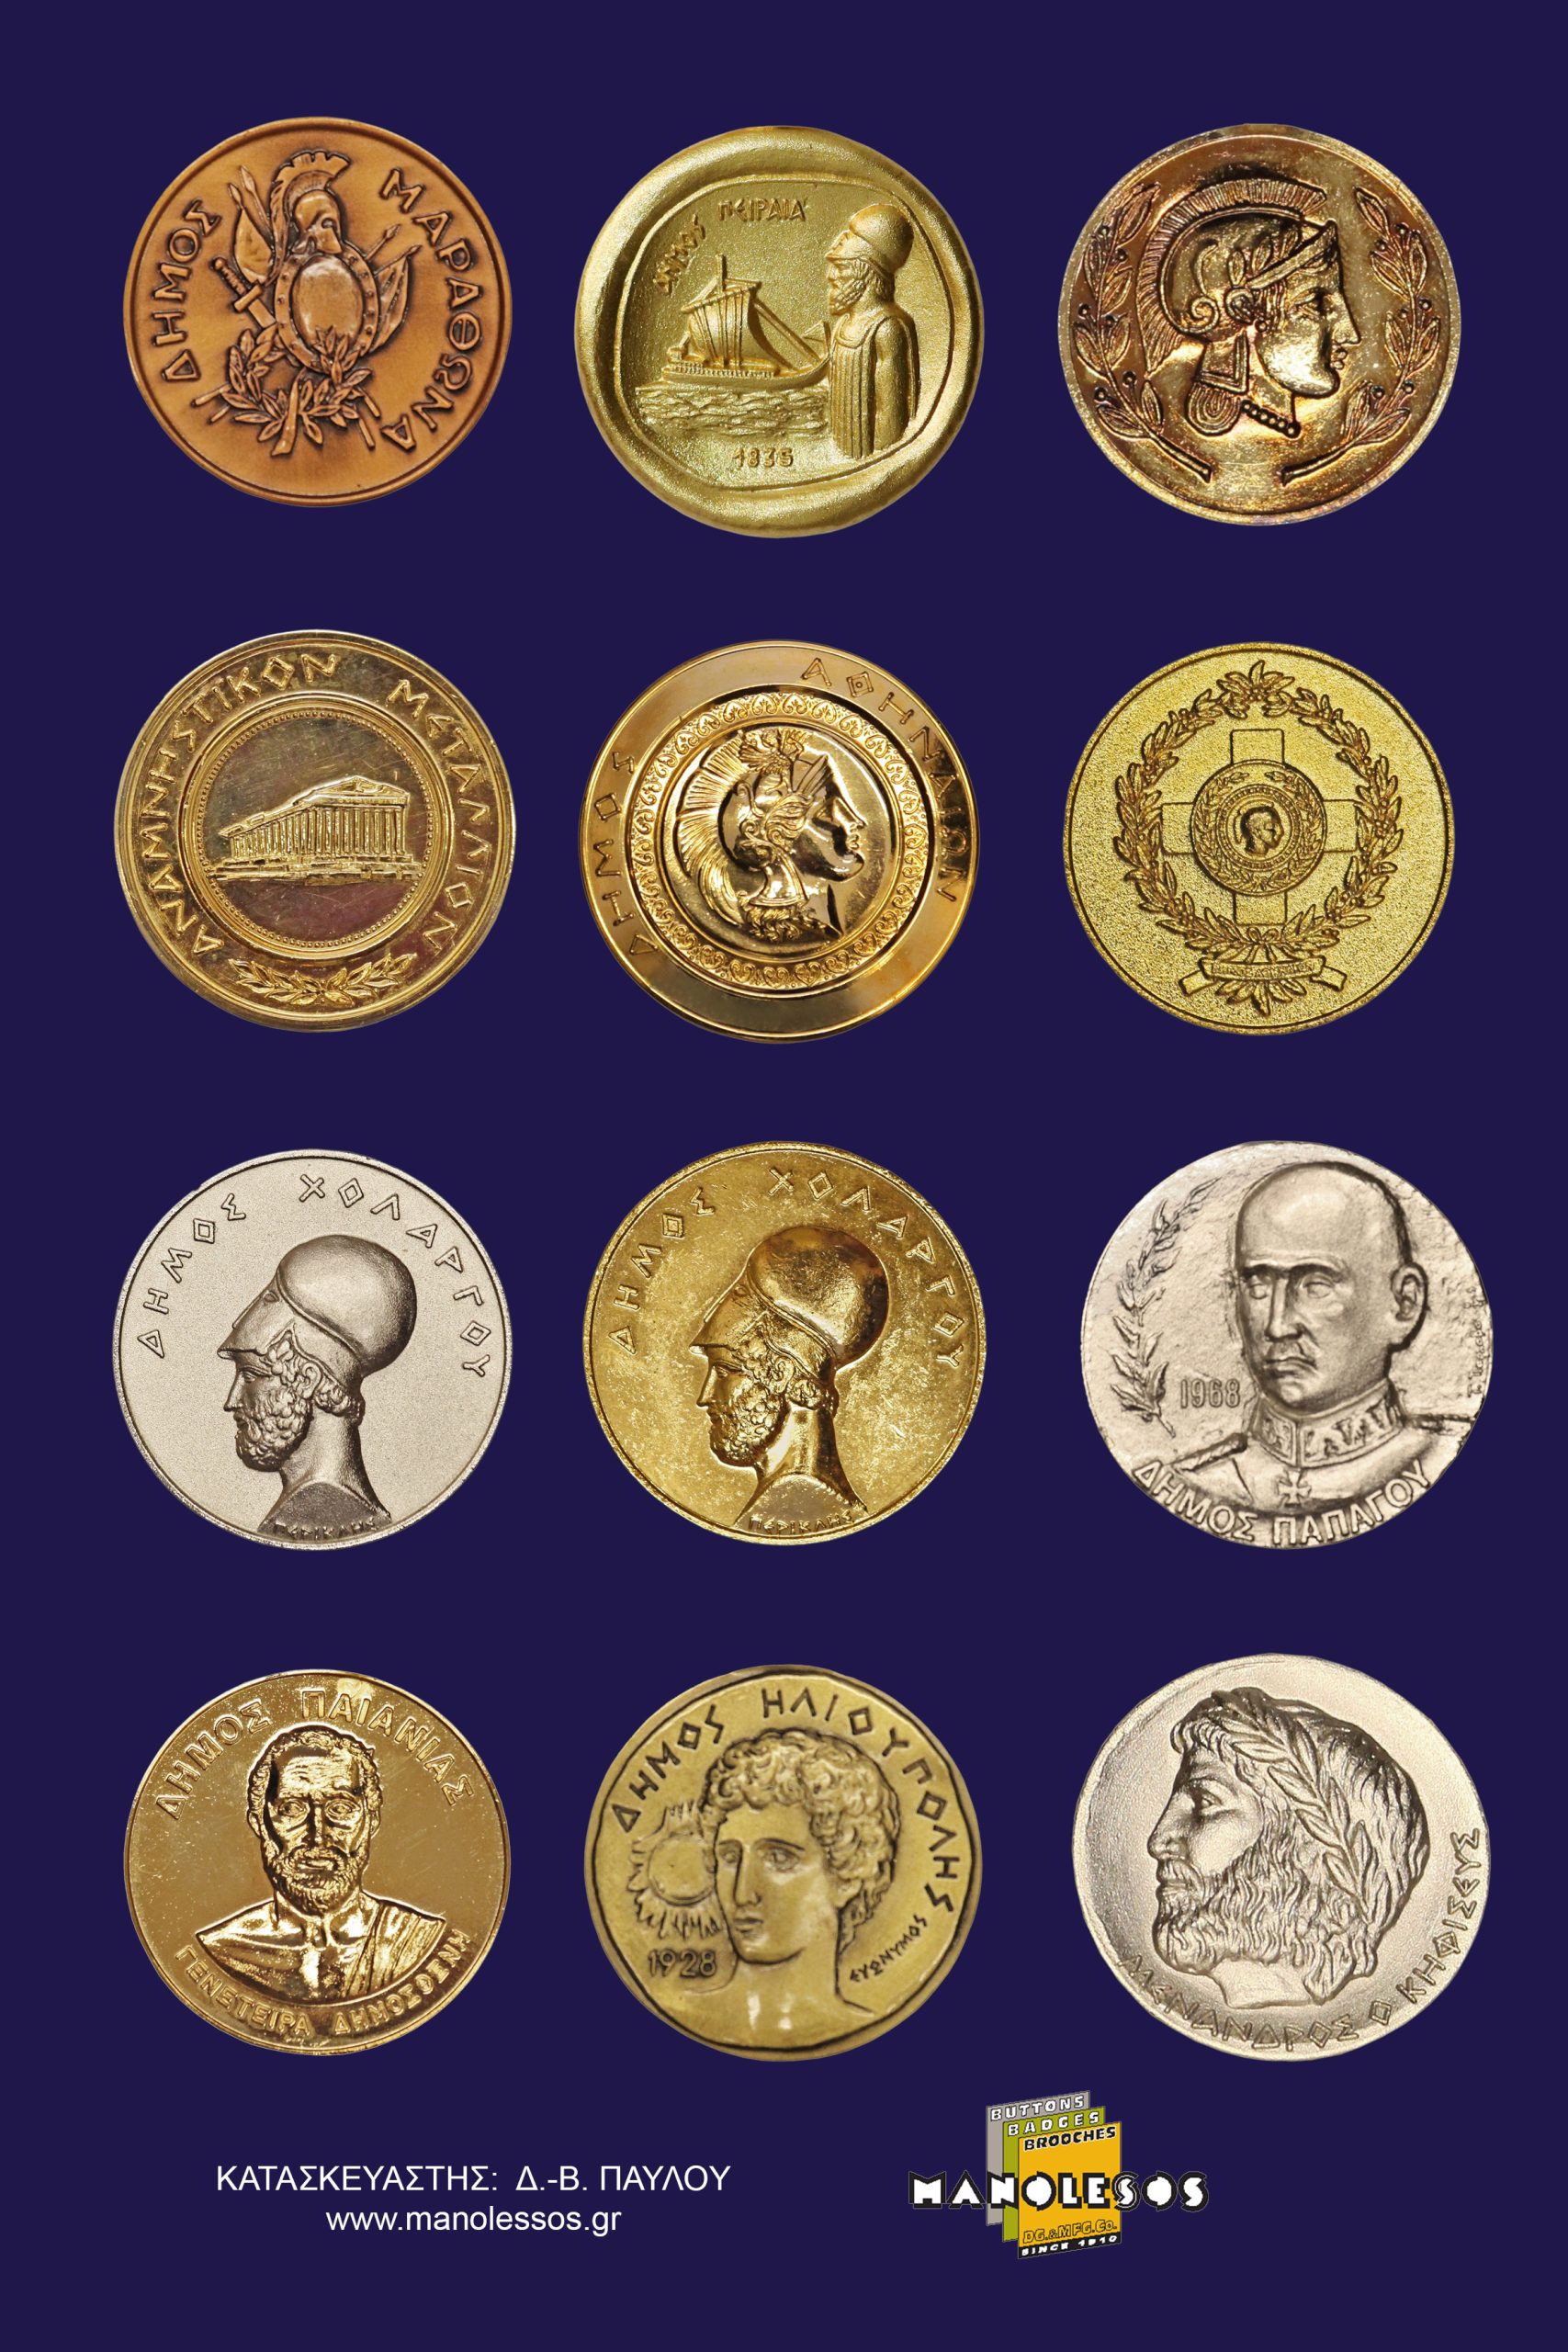 Αναμνηστικά μετάλλια για δήμους από τη Μανωλέσος 003